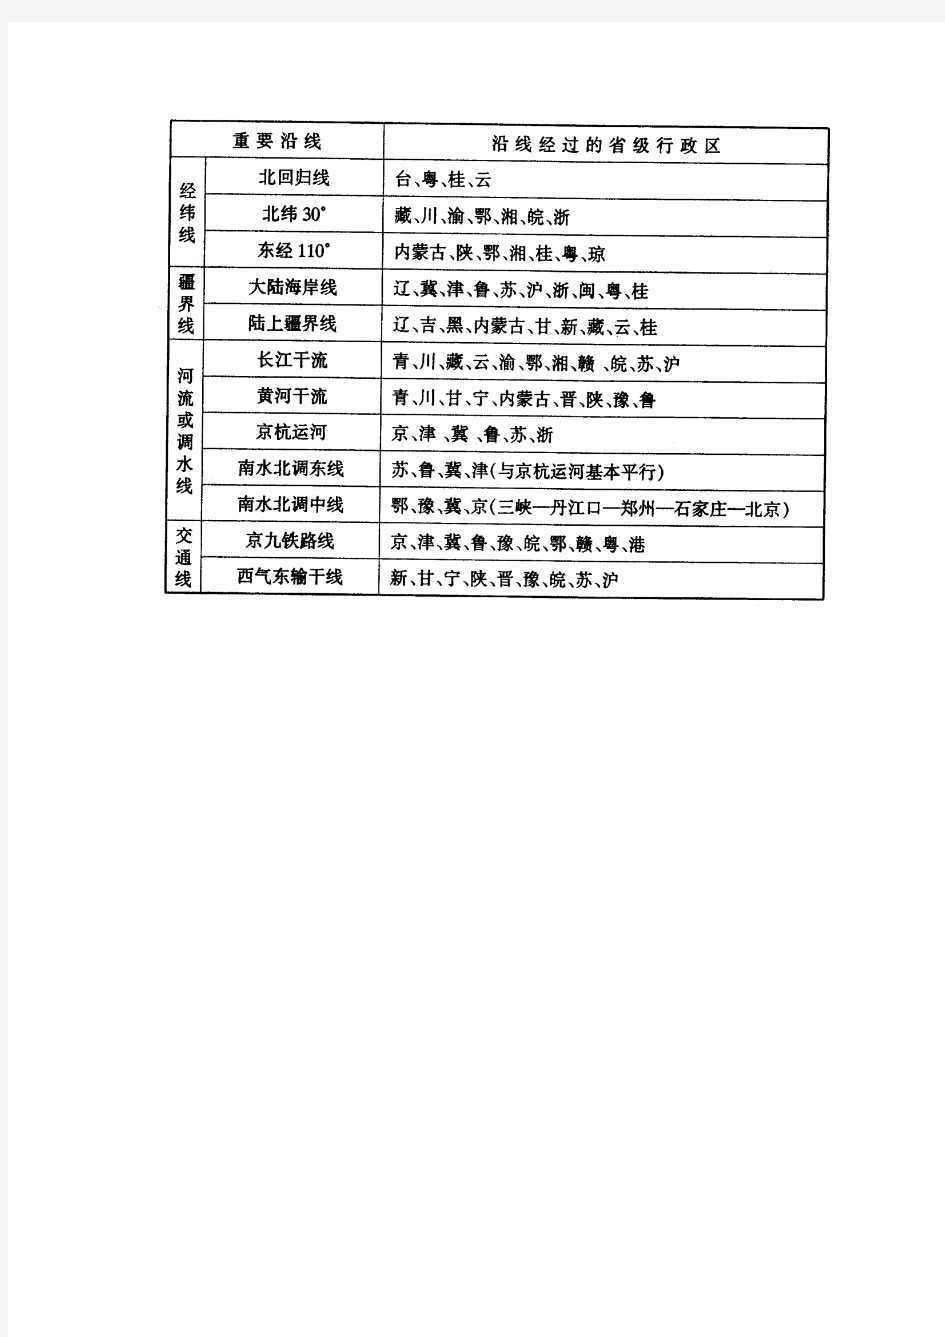 中国省级行政区划单位的名称